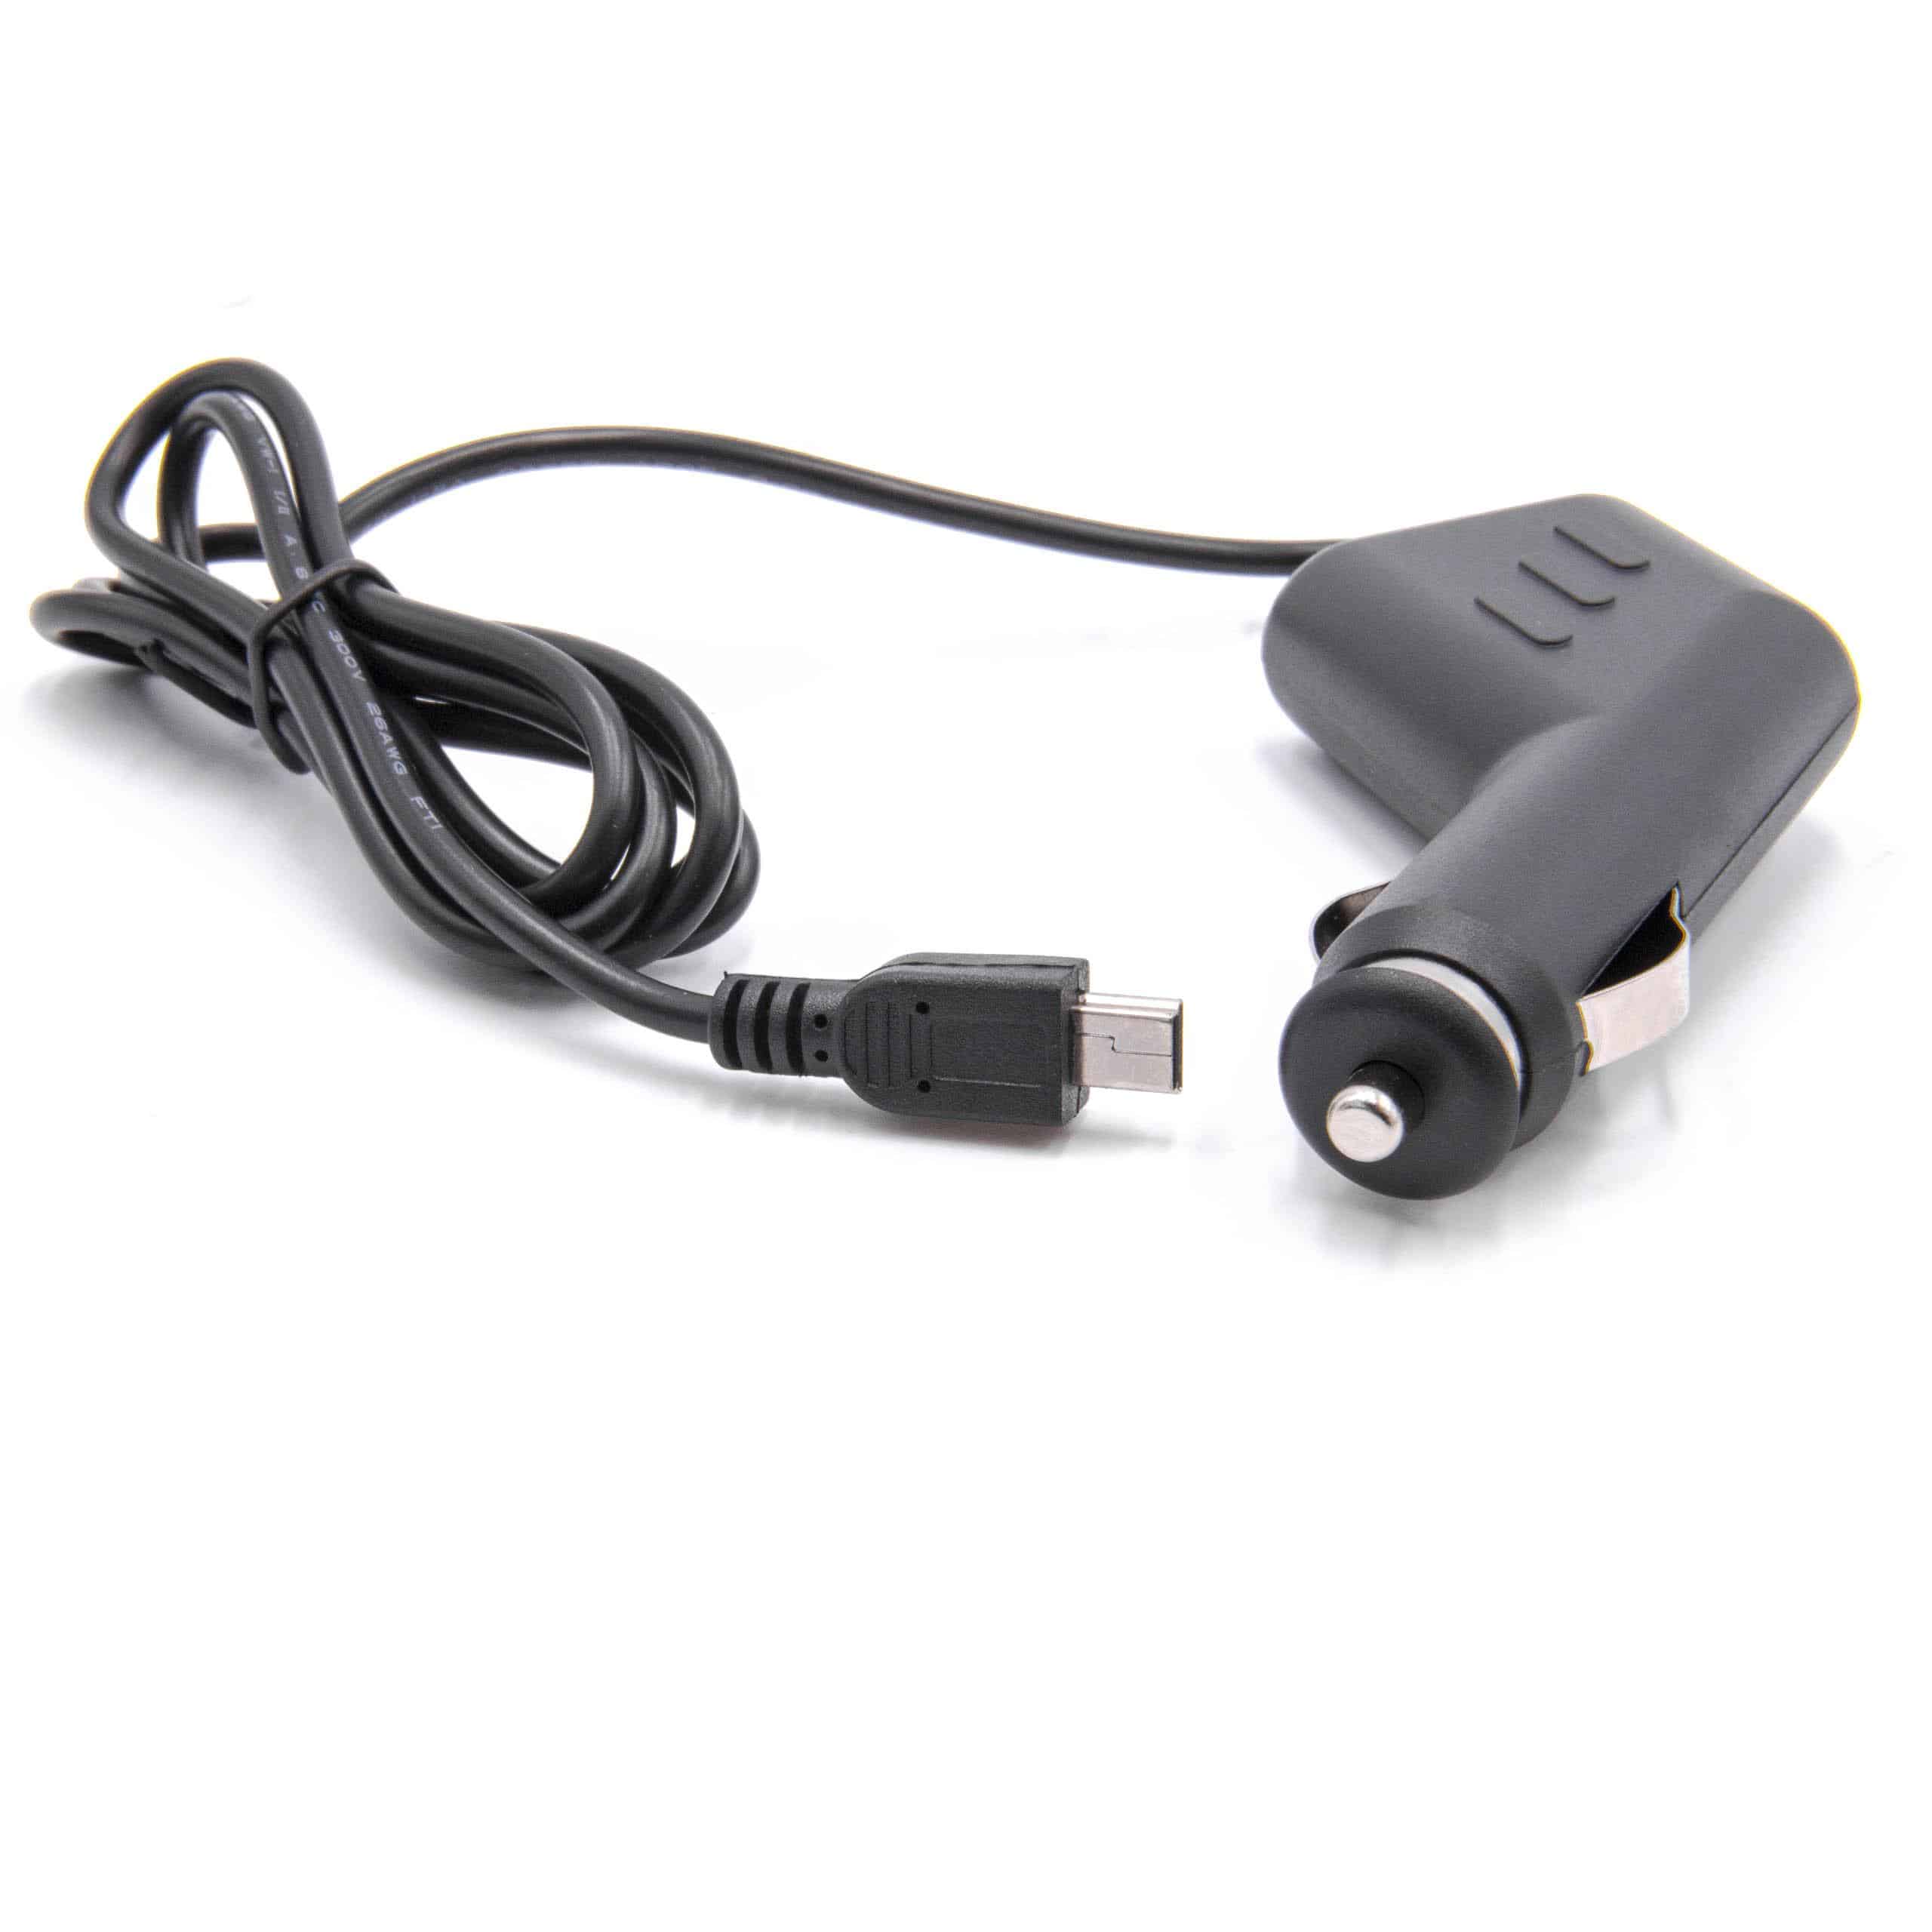 Caricatore per auto mini-USB 1,0 A per dispositivi come GPS, navigatore